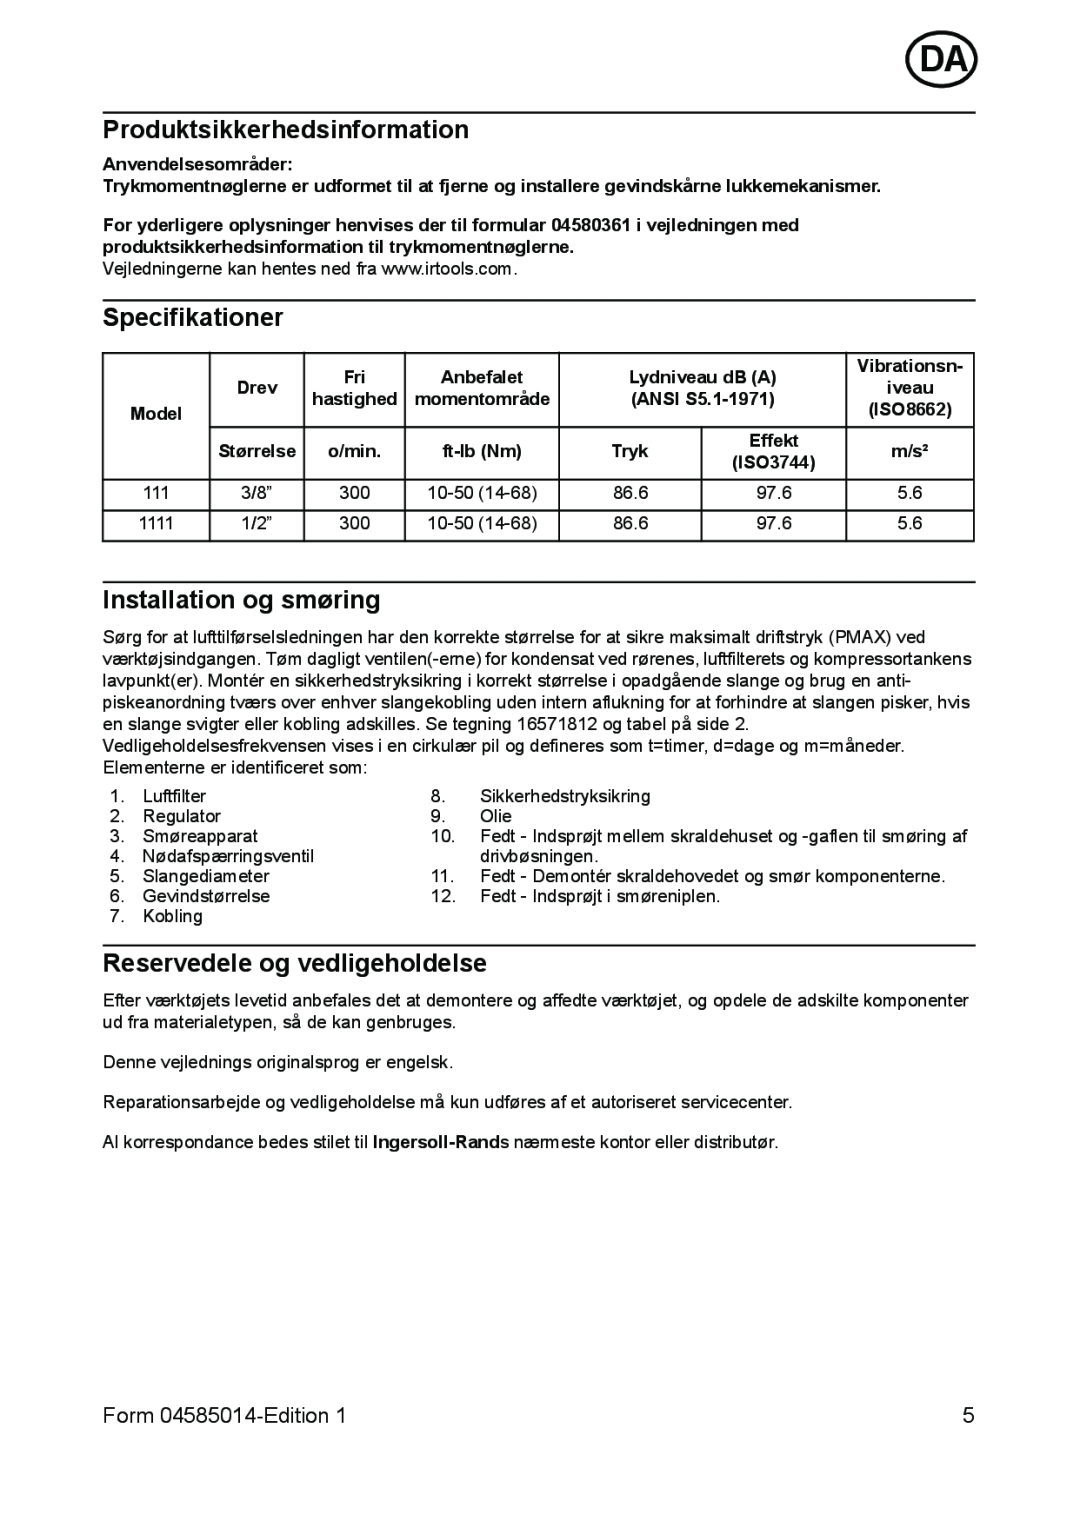 Ingersoll-Rand 111 Produktsikkerhedsinformation, Specifikationer, Installation og smøring, Reservedele og vedligeholdelse 